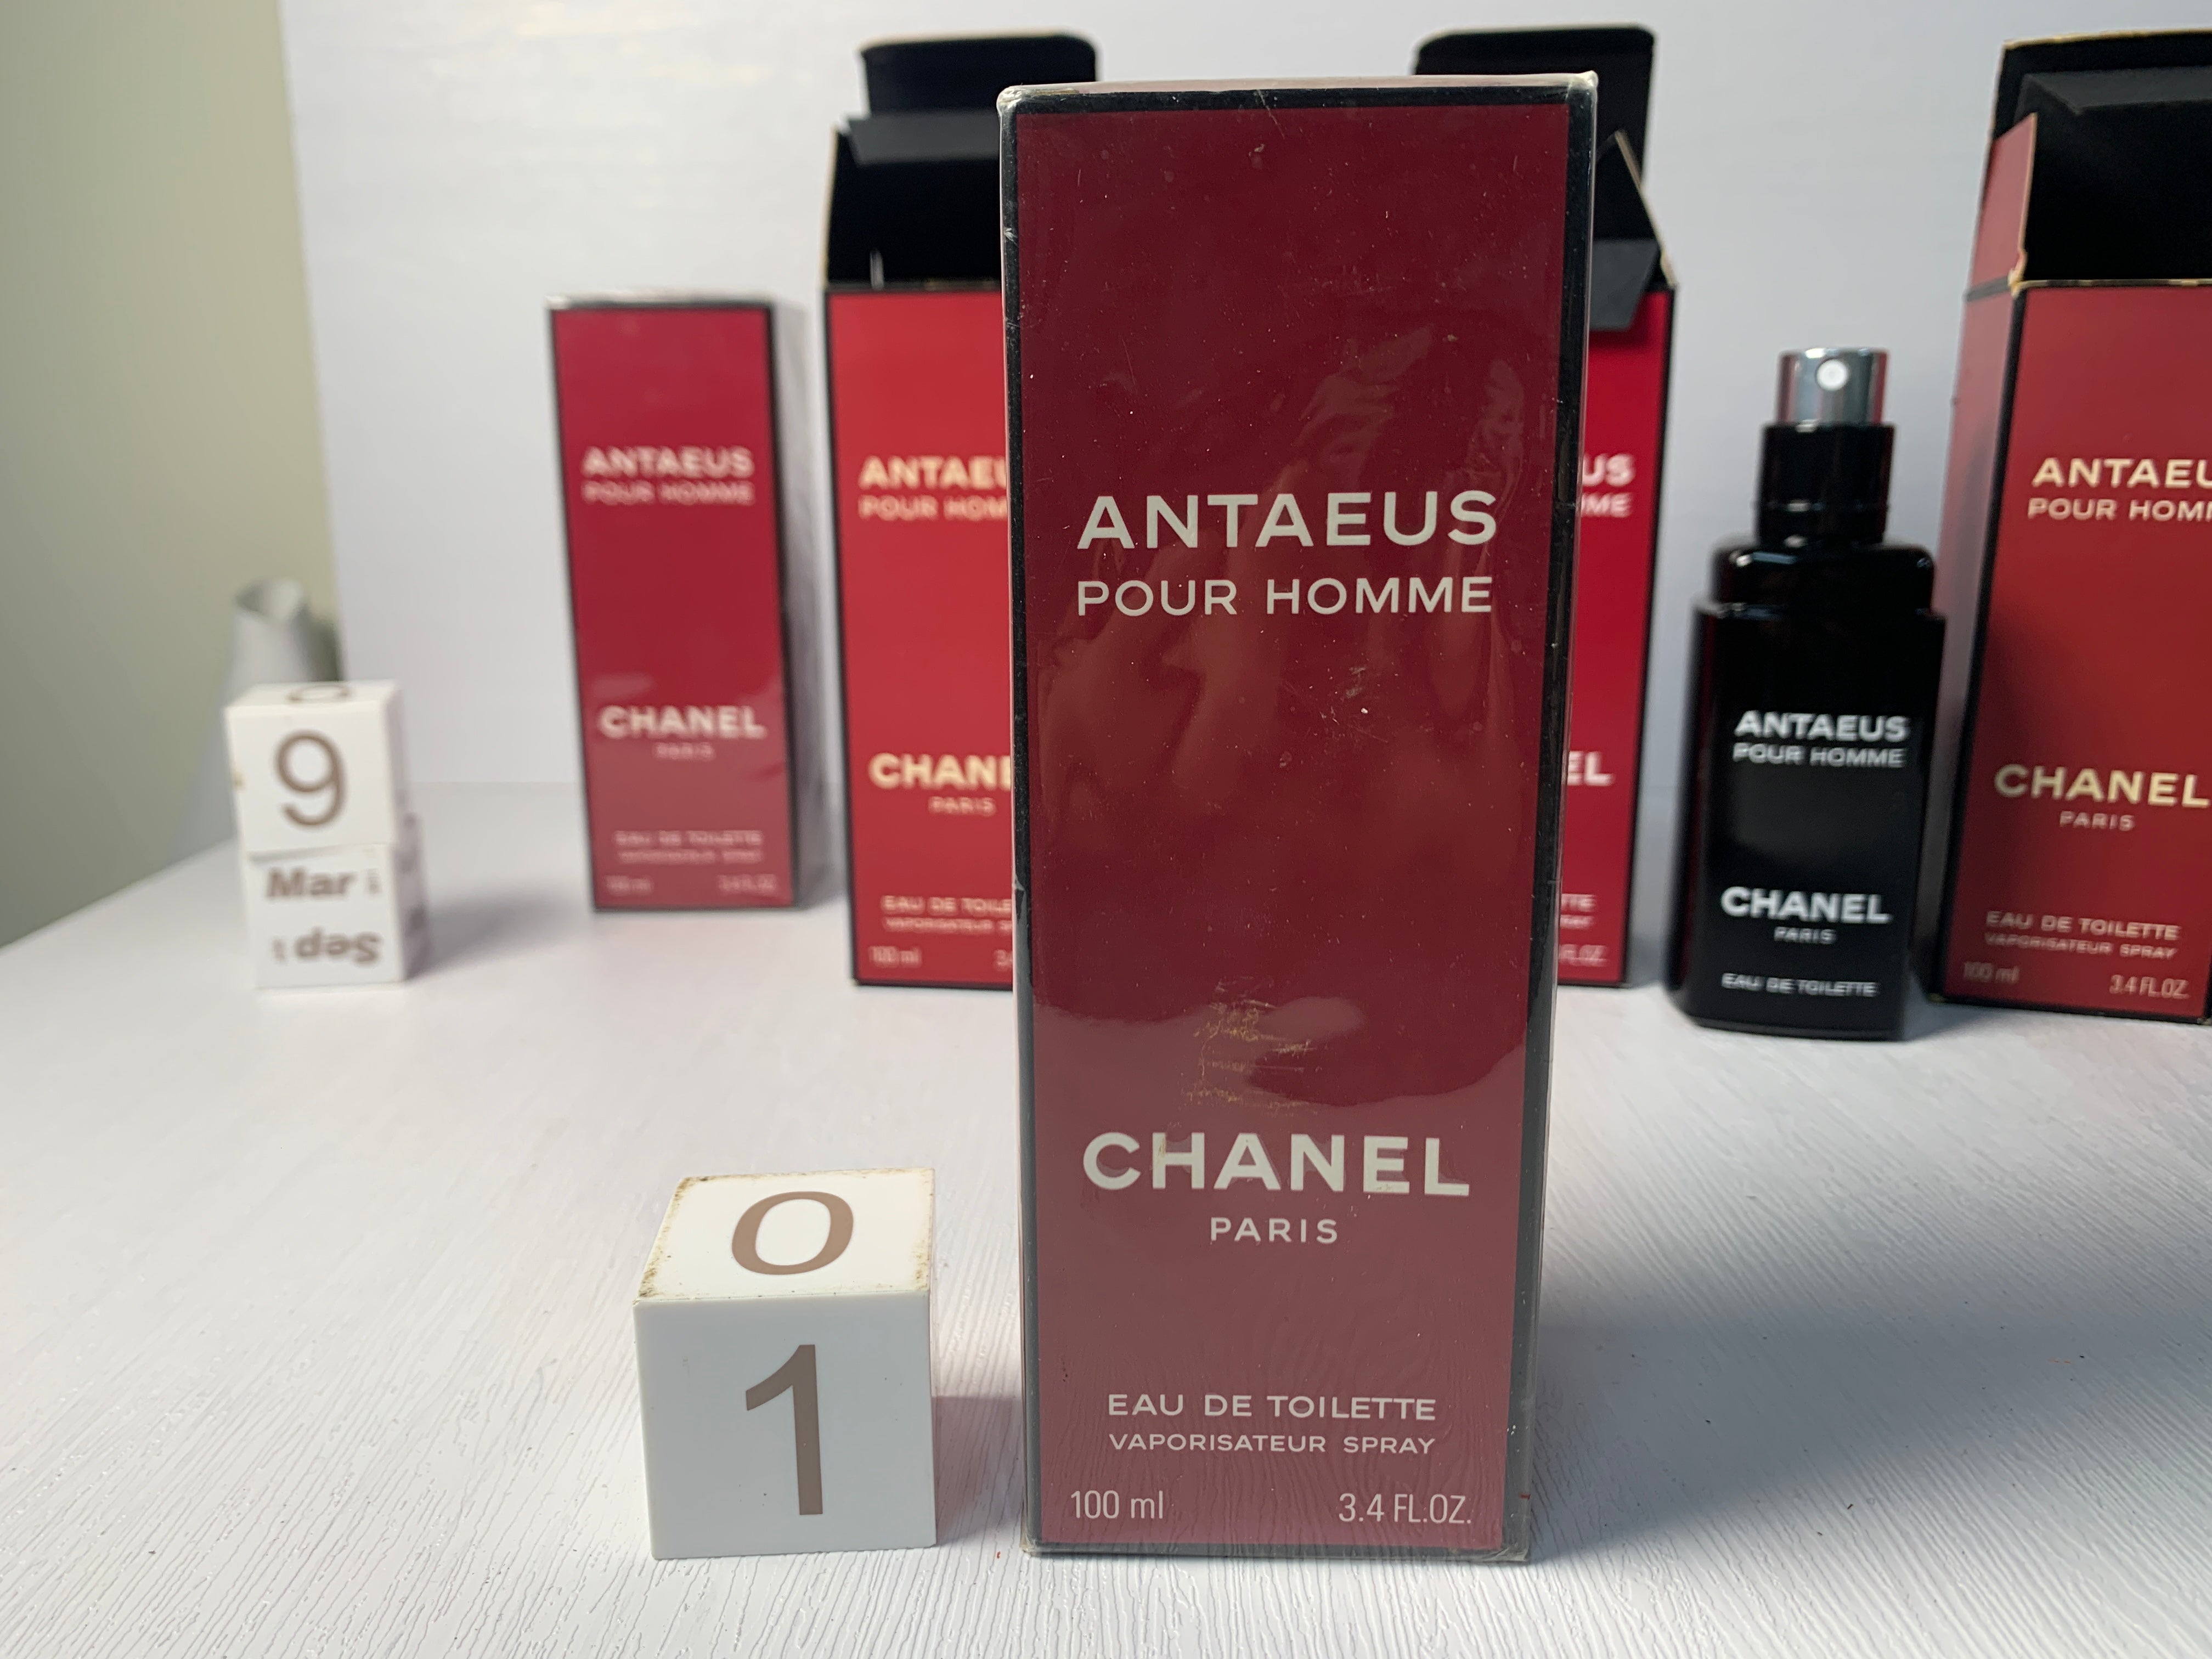 Chanel ANTAEUS Pour Homme 3.4 Oz New Vintage 